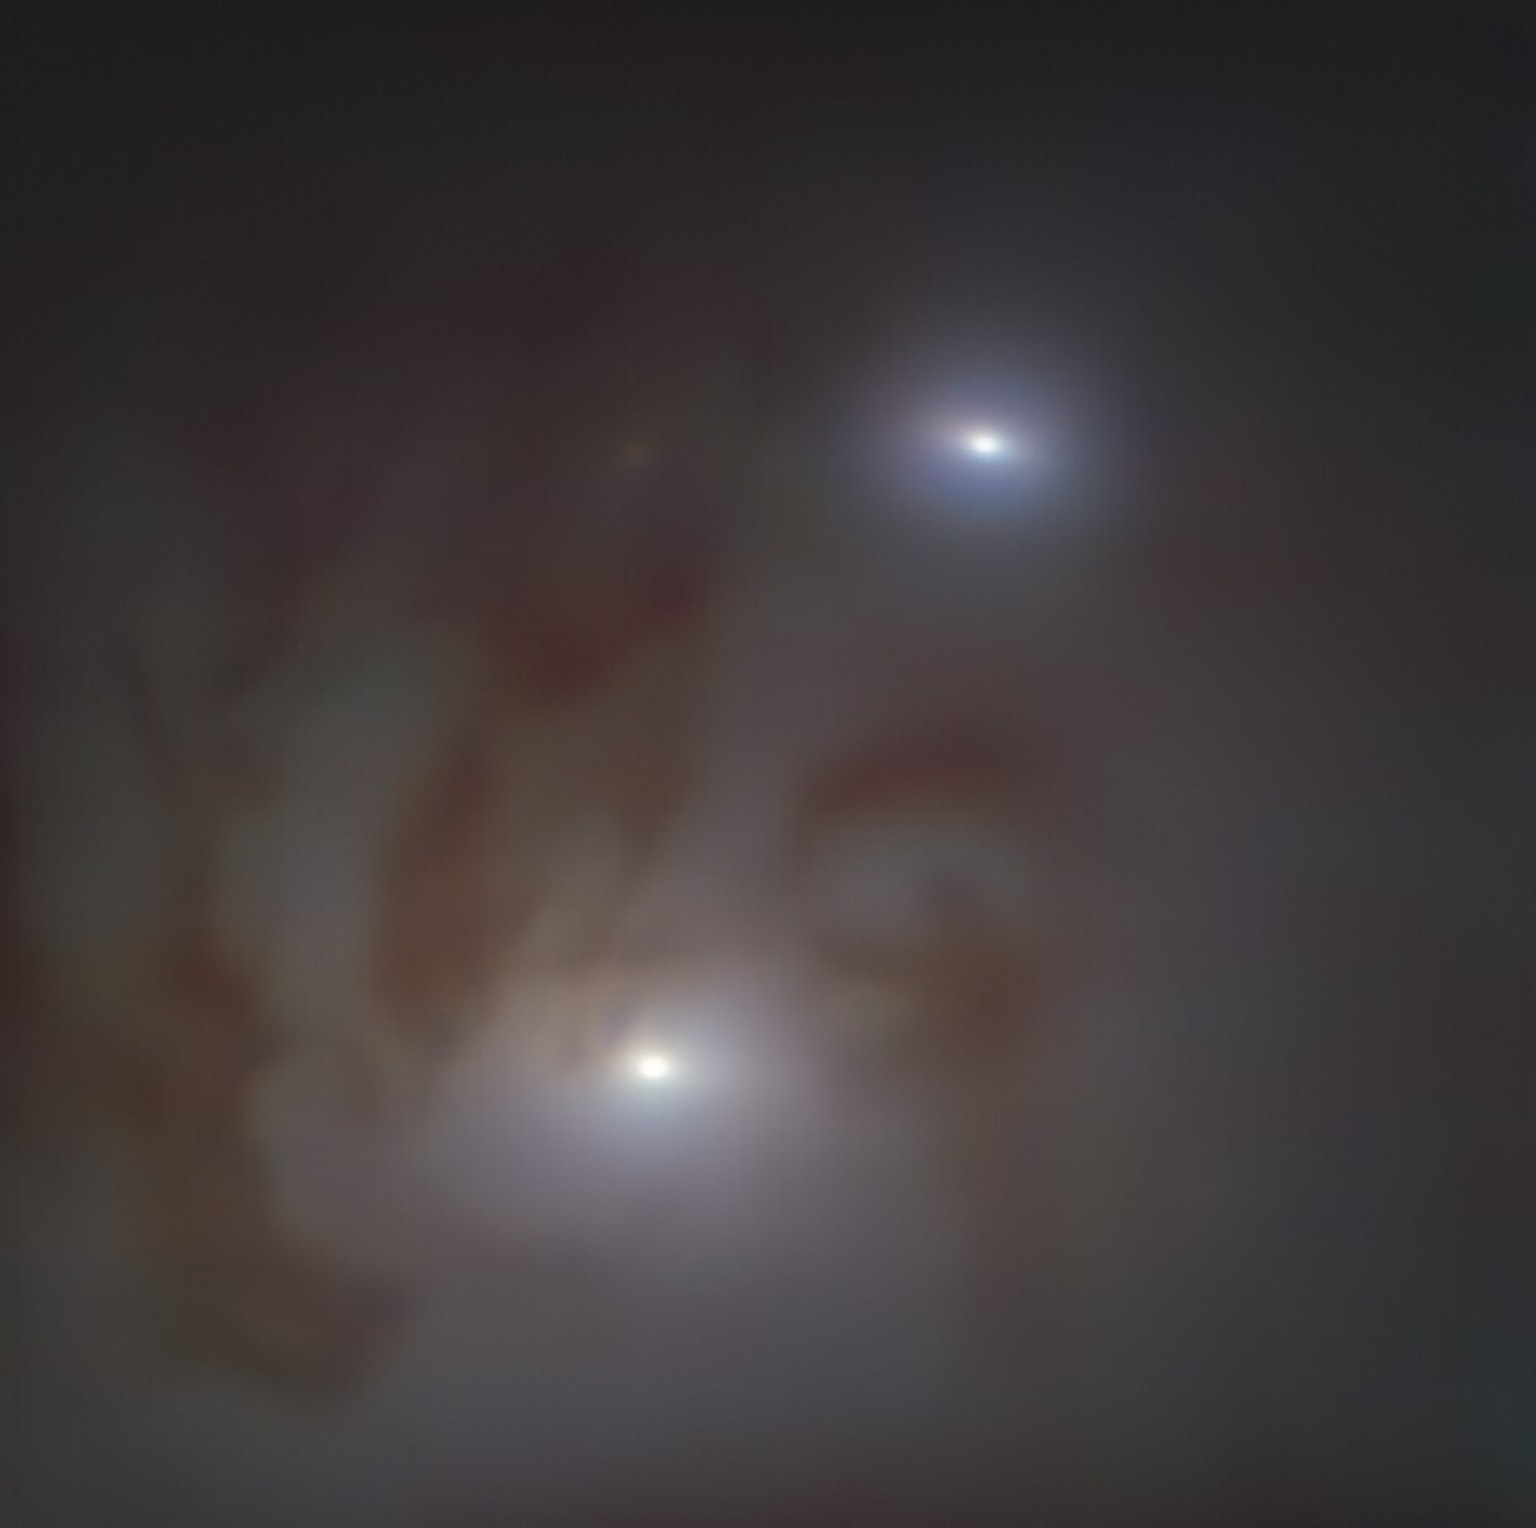 Nahaufnahme der beiden hellen galaktischen Kerne in NGC 7727, einer 89 Millionen Lichtjahre von der Erde entfernten Galaxie im Sternbild Wassermann, die jeweils ein supermassereiches schwarzes Loch be ...